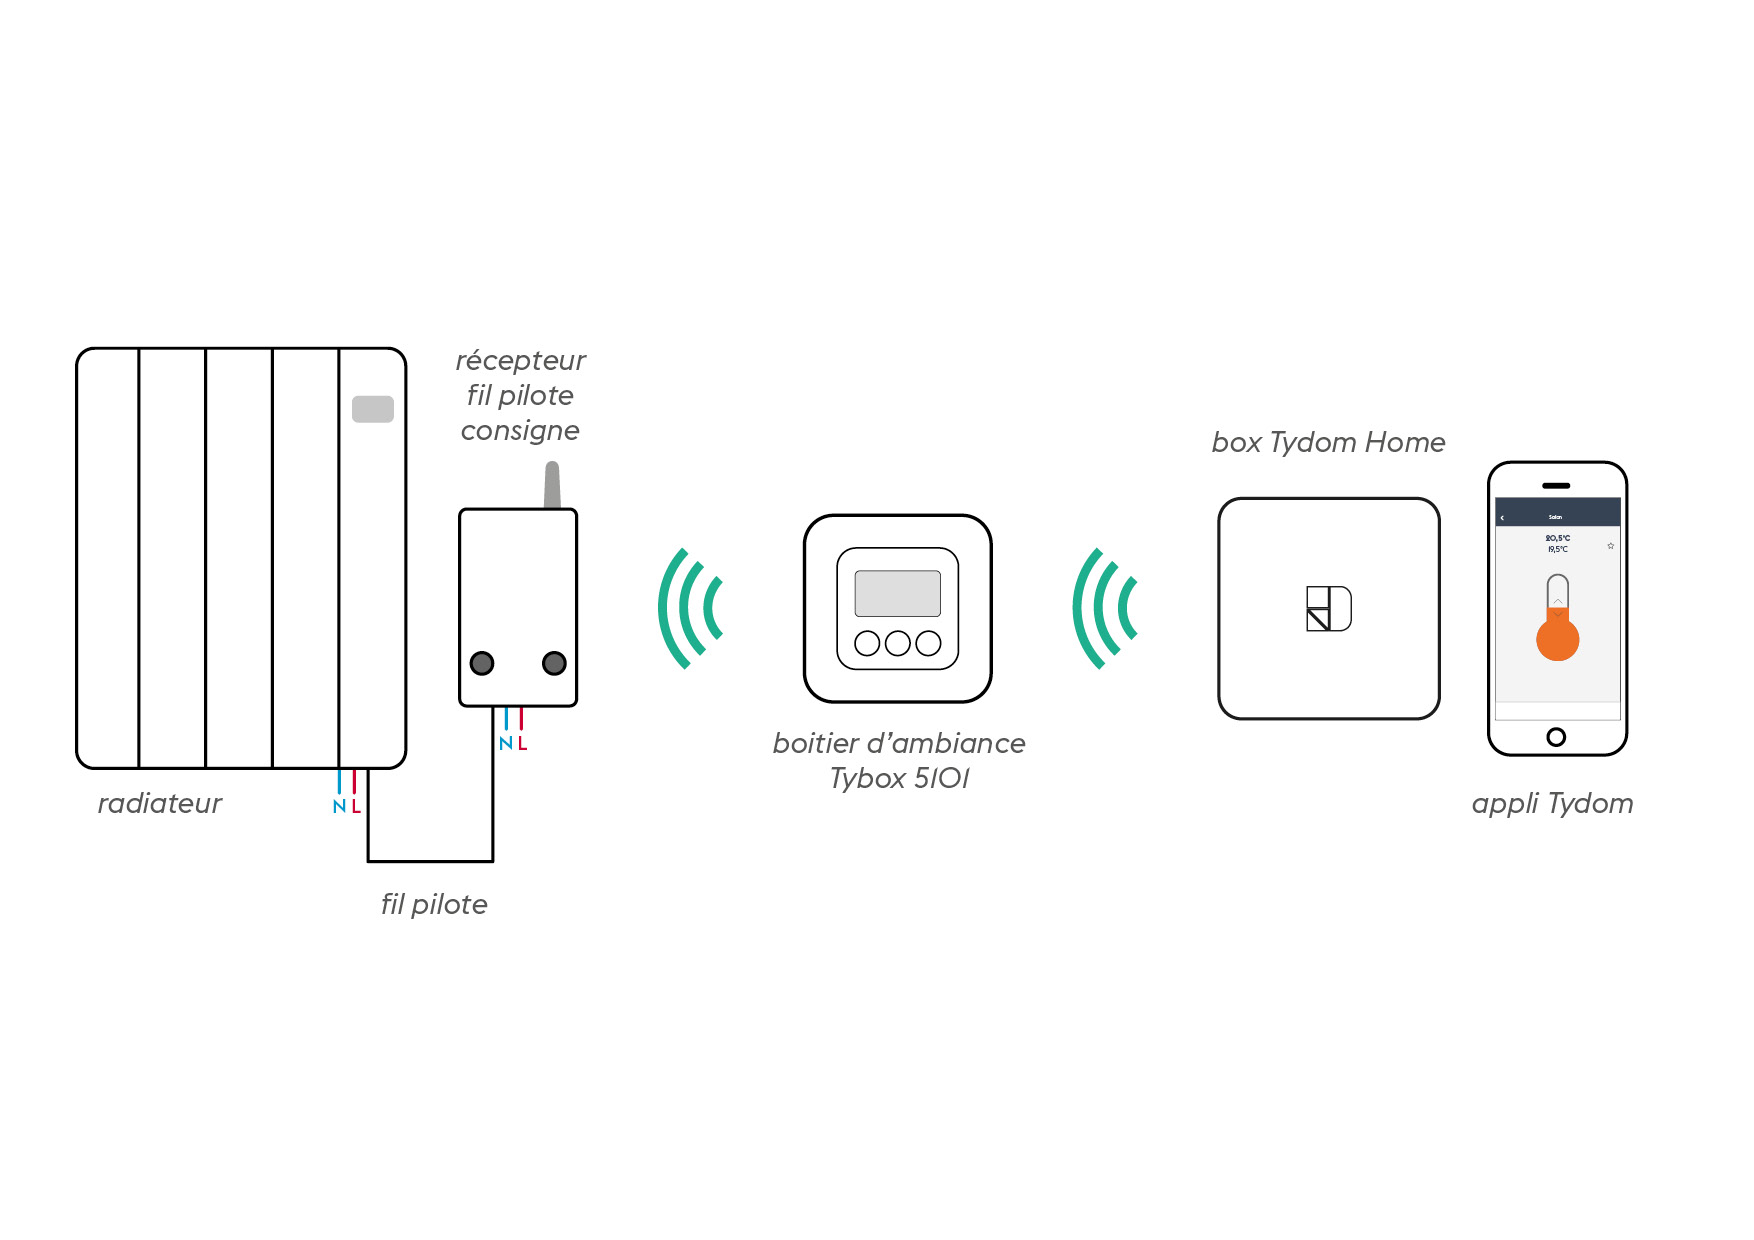 Connecter un thermostat sans fil a un radiateur electrique